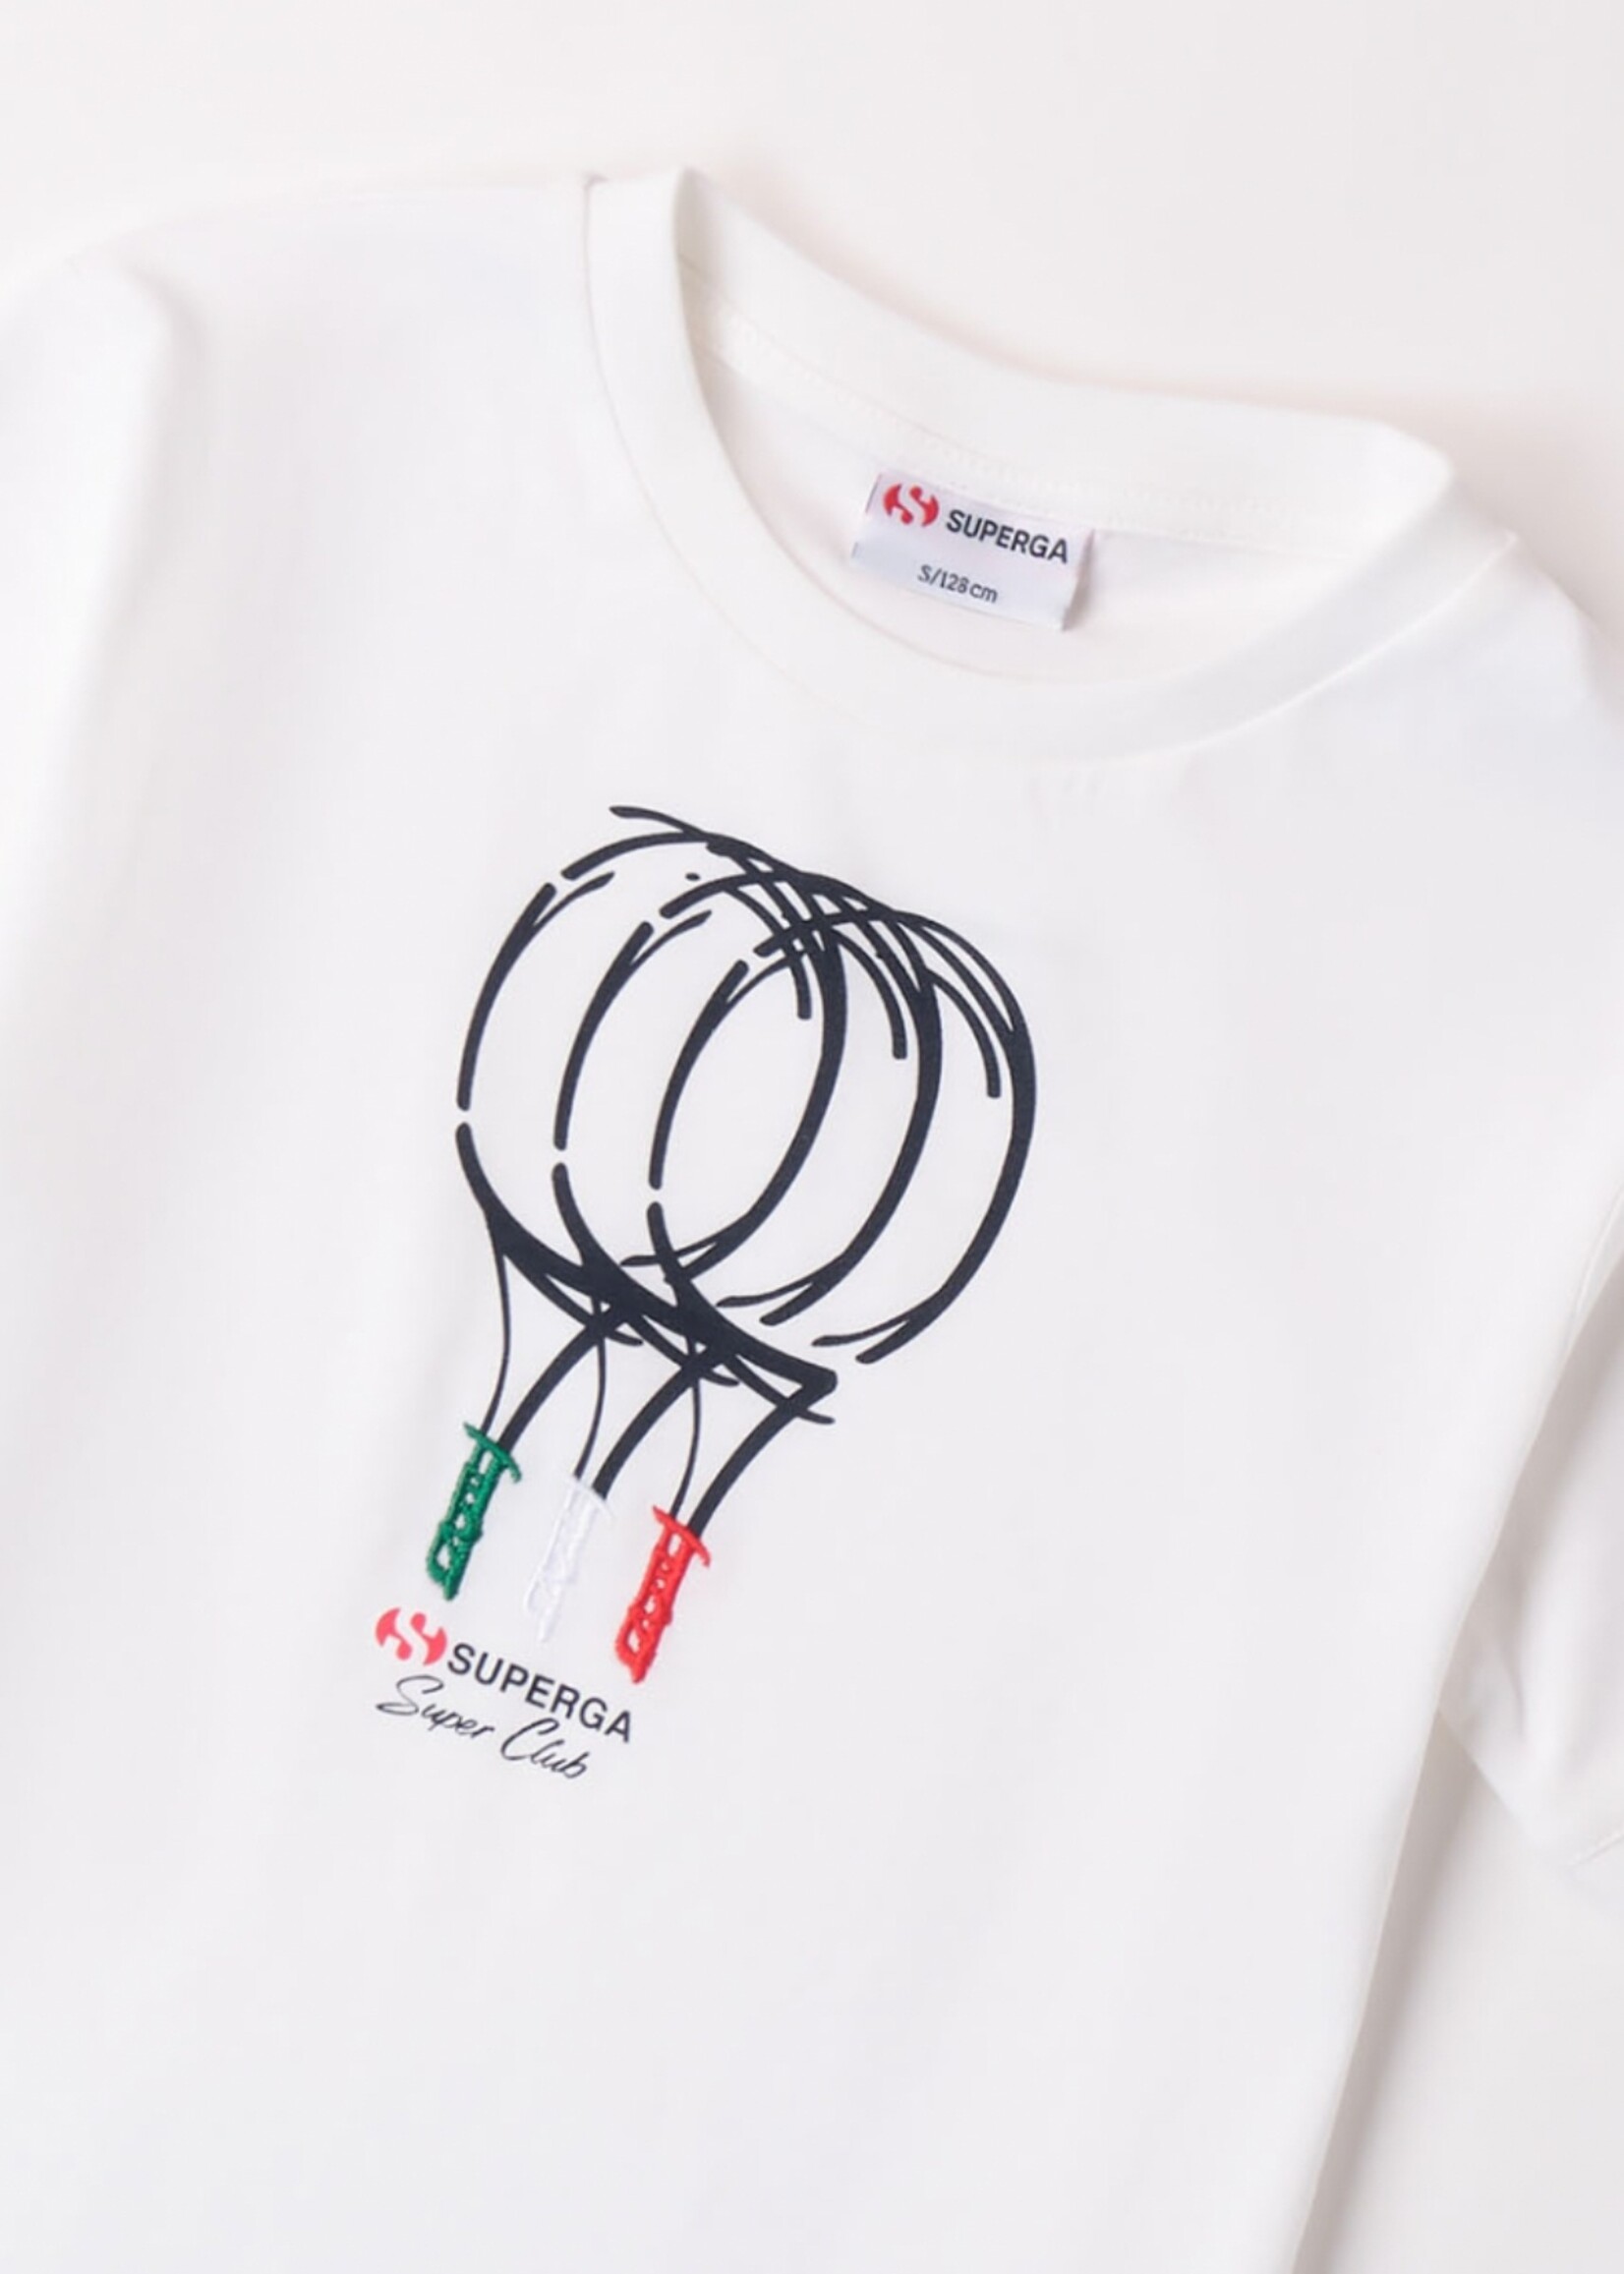 Superga White T-shirt Tennisracket